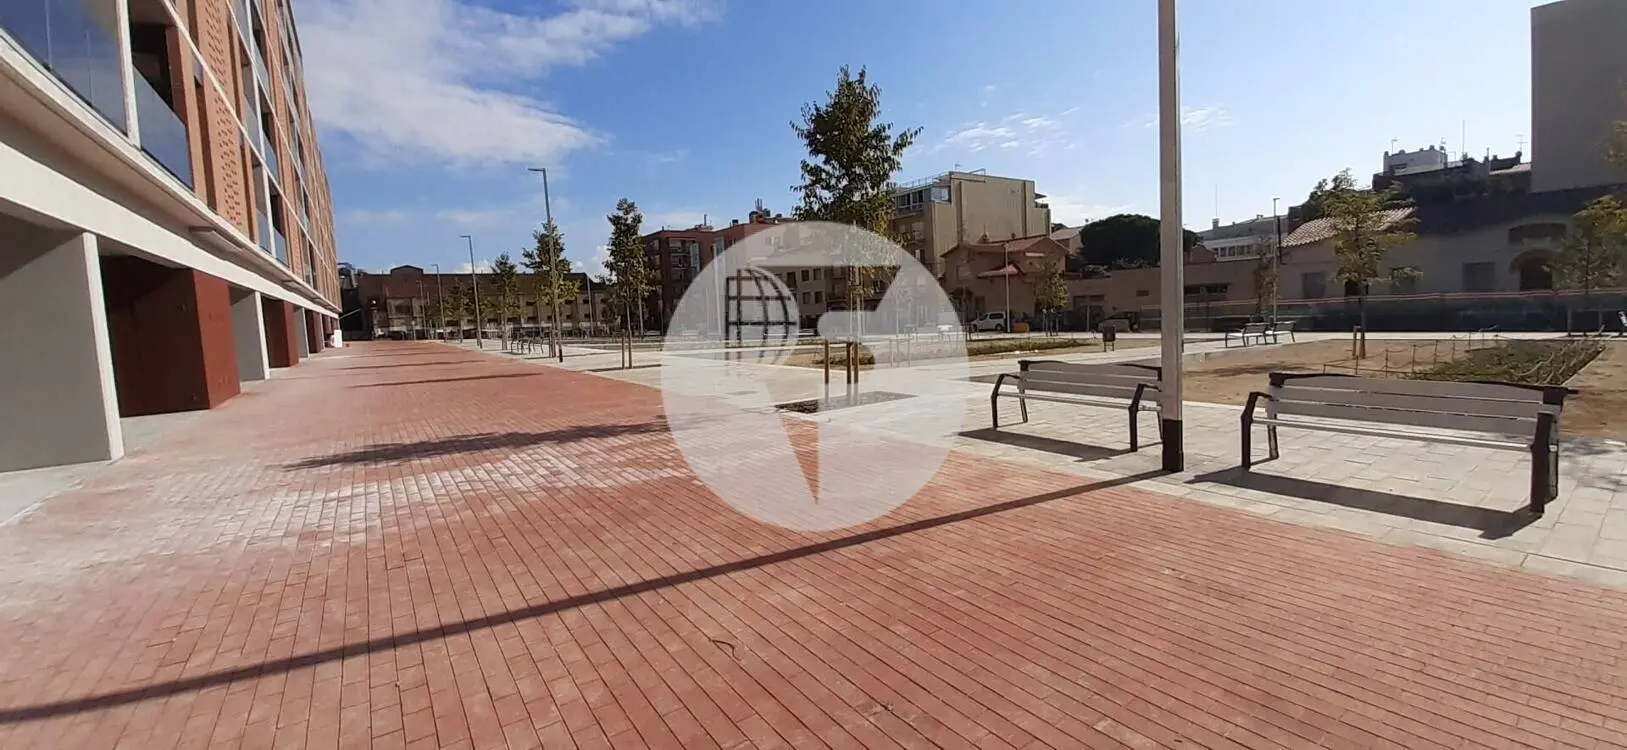 Local comercial d'Obra Nova a Sabadell IE-220758 2